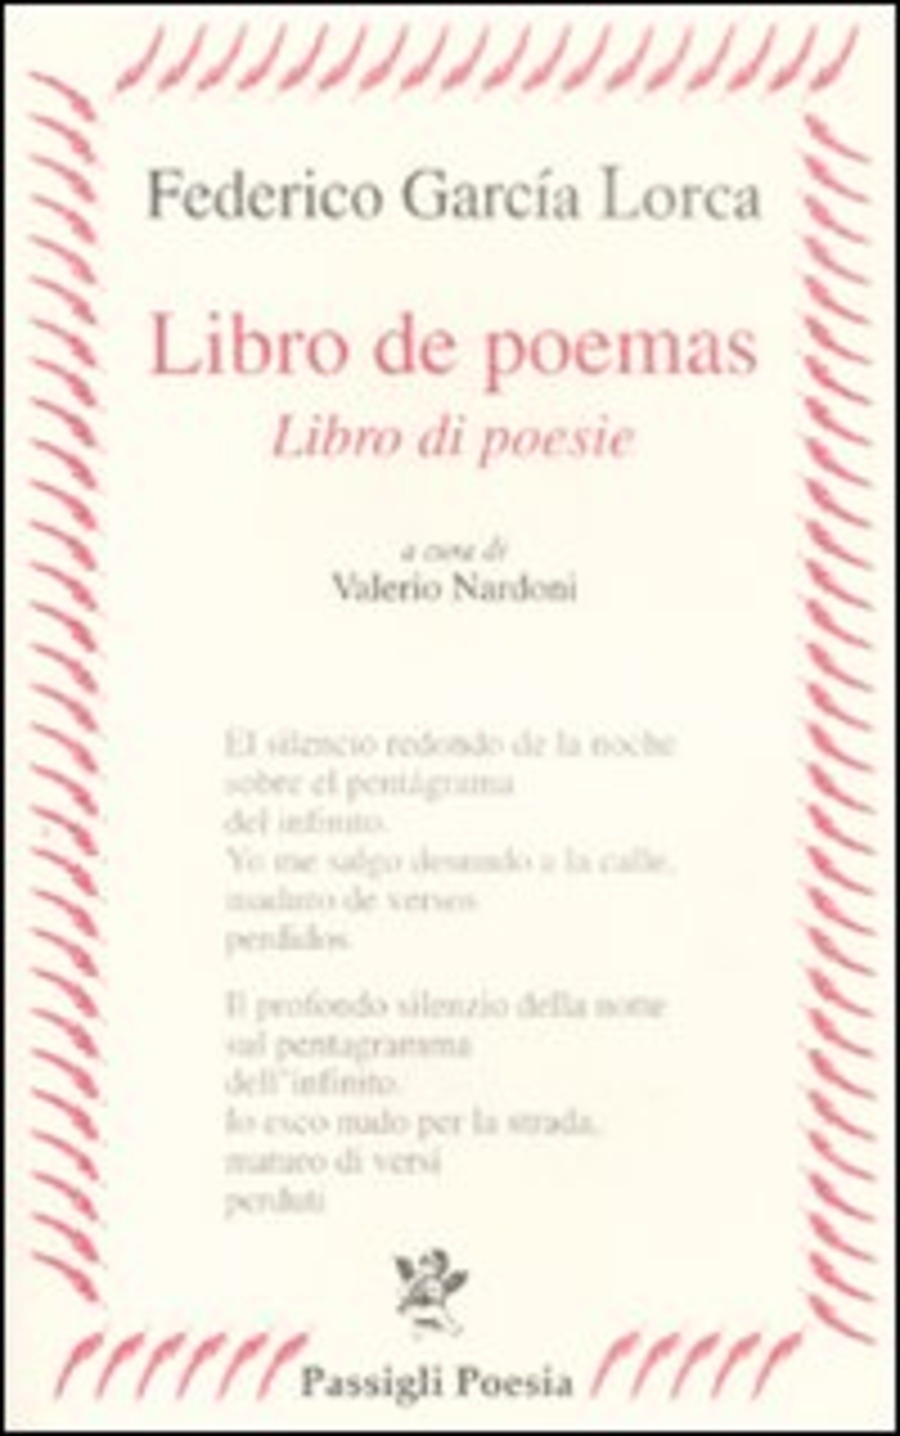 Libro de poemas-Libro di poesie. Testo spagnolo a fronte